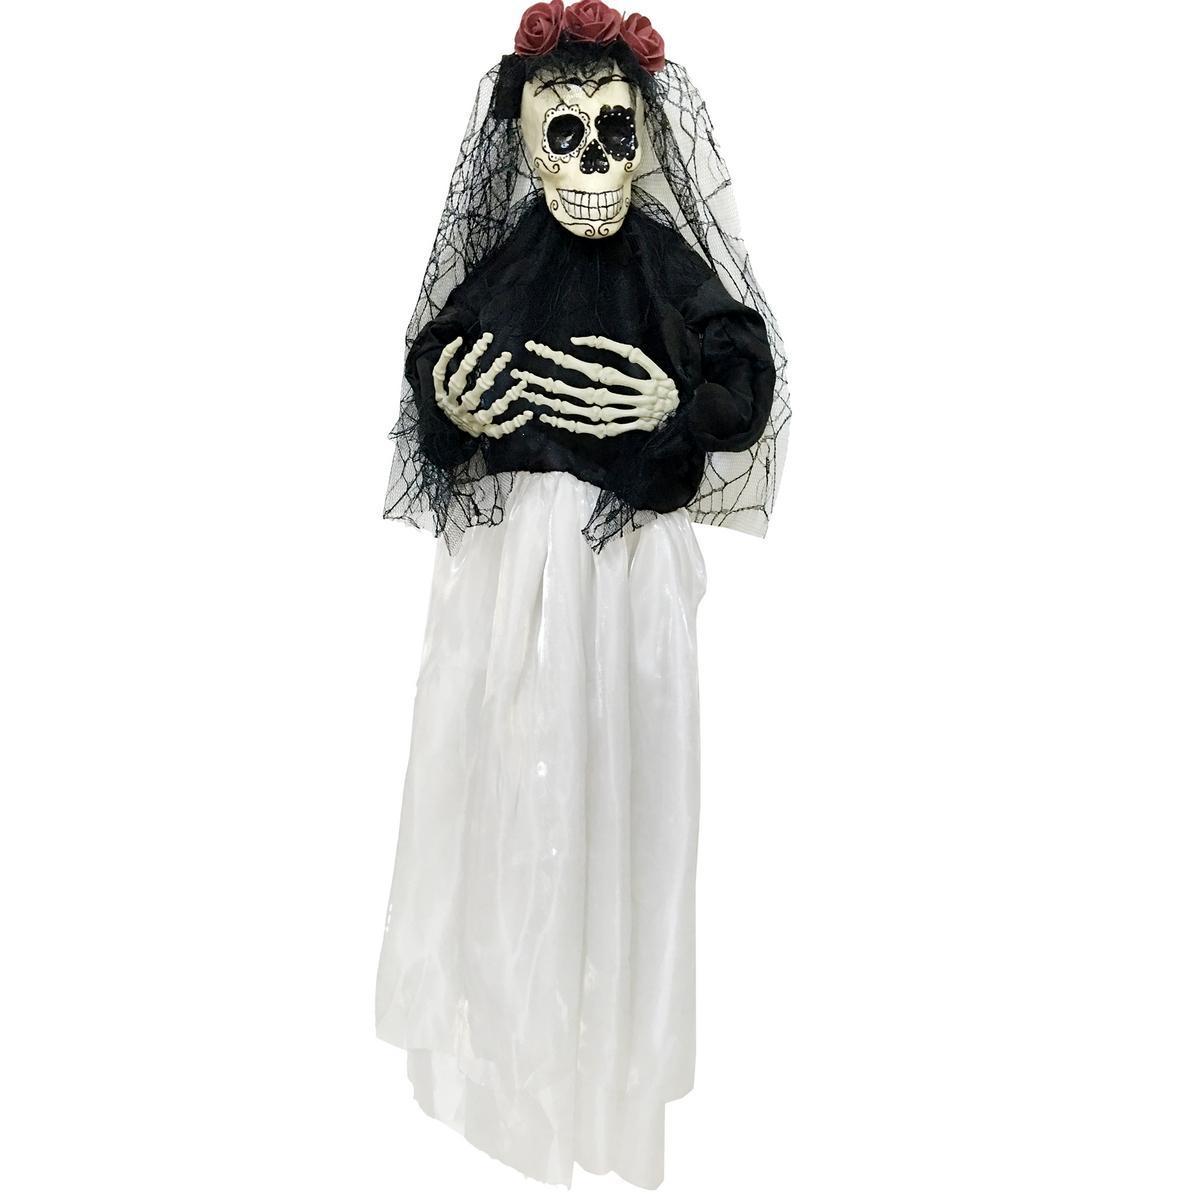 Décoration squelette Halloween - Polyester et plastique - 10 x 60 x H 90 cm - Noir et blanc